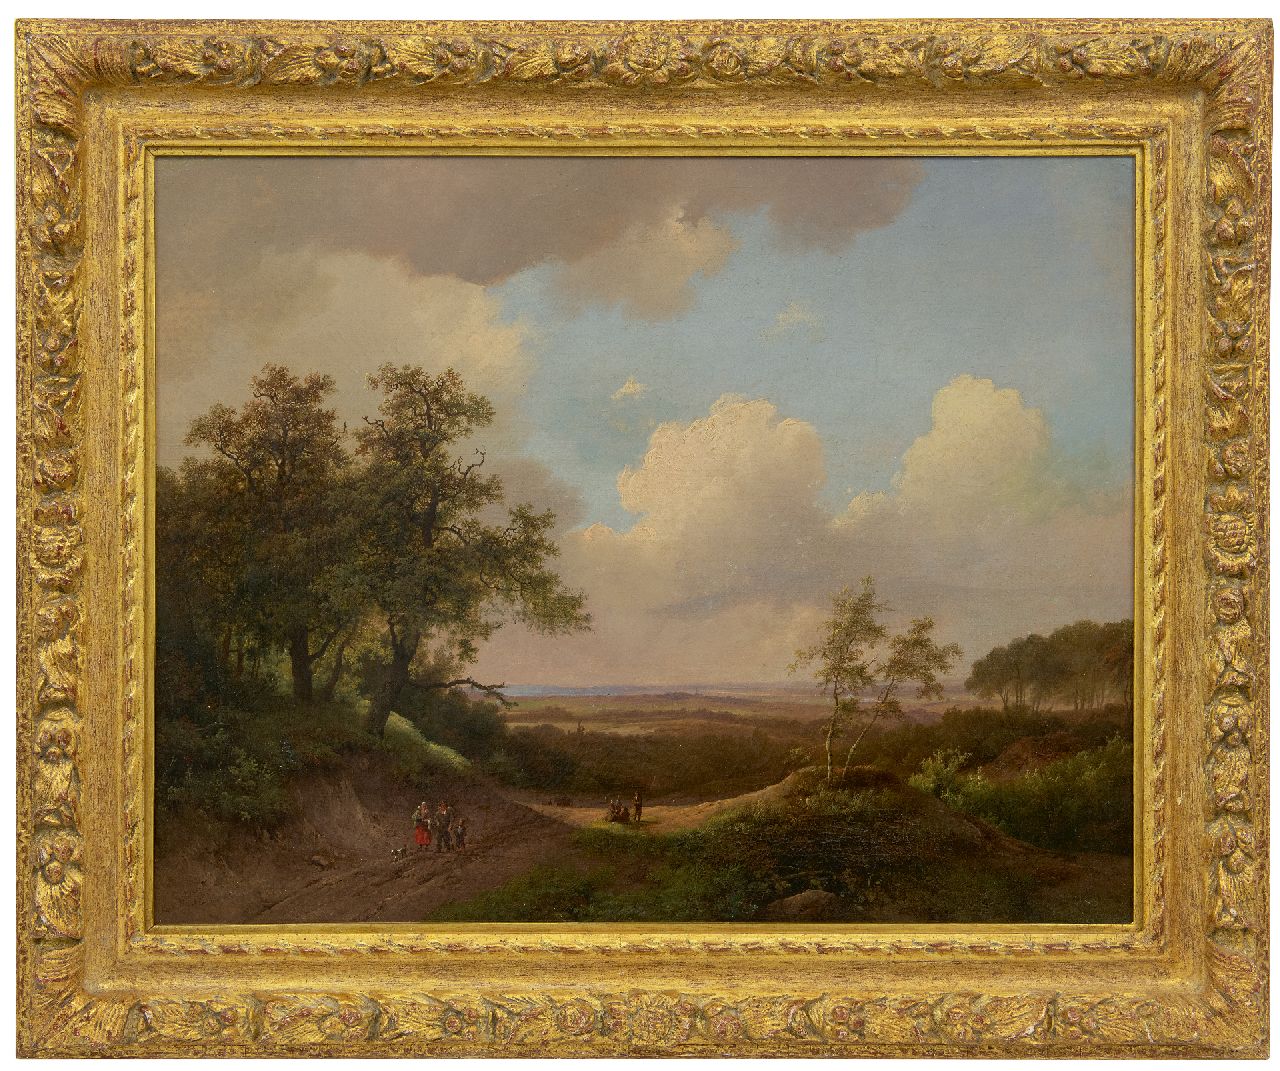 Koekkoek I M.A.  | Marinus Adrianus Koekkoek I | Gemälde zum Verkauf angeboten | Panoramalandschaft mit Landleute, Öl auf Leinwand 51,0 x 65,0 cm, Unterzeichnet l.u. und datiert 1850